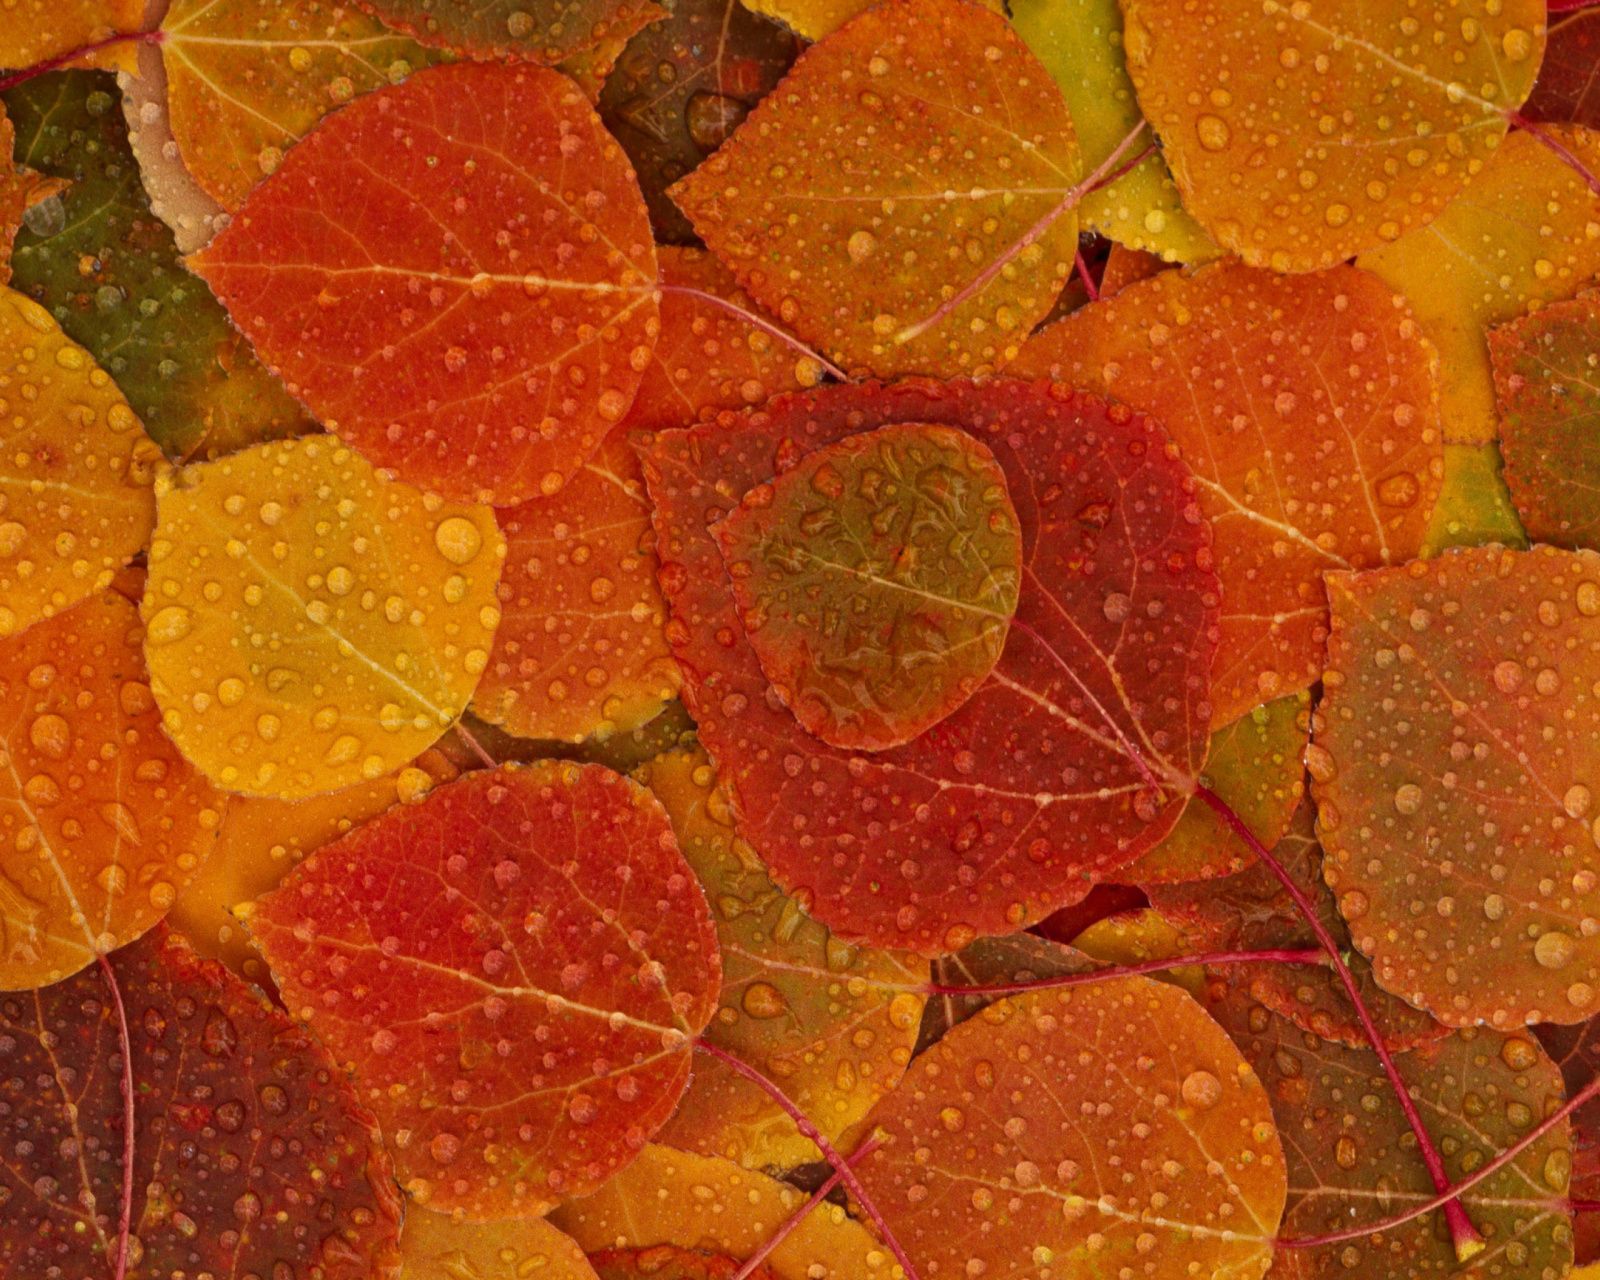 Das Autumn leaves with rain drops Wallpaper 1600x1280